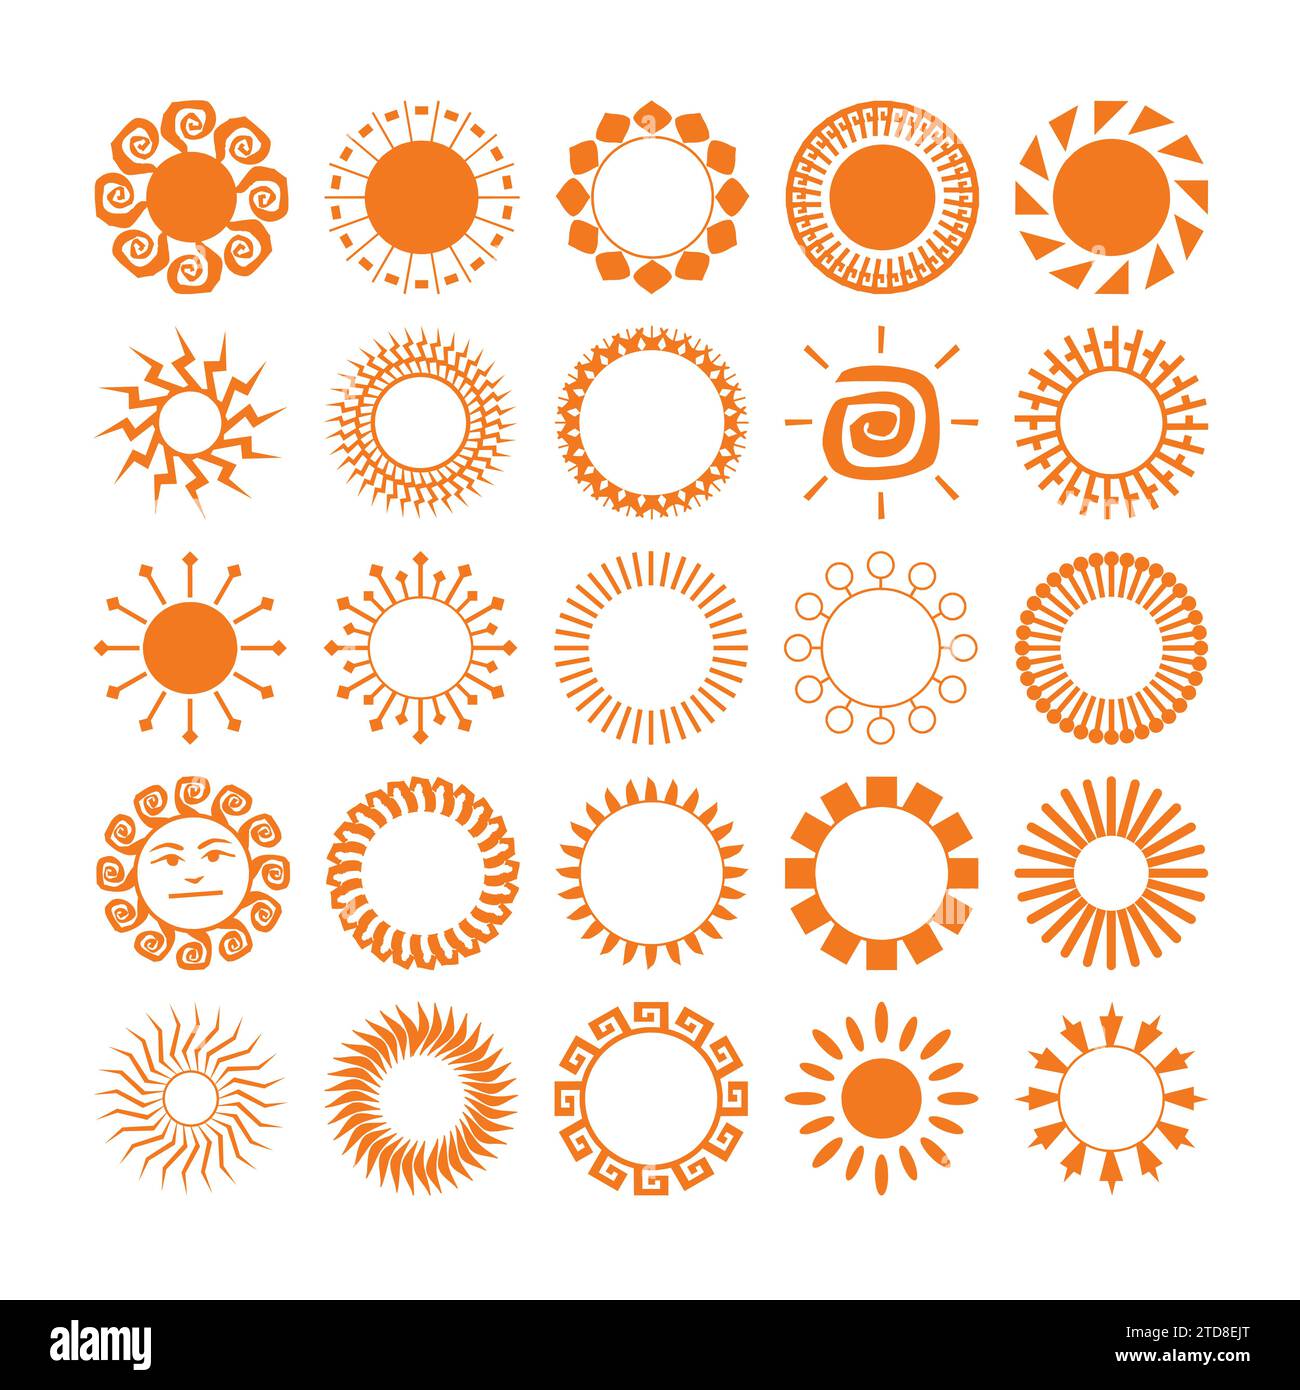 Vektorsatz von Sonnen- und Sonnenstrahlen-Symbolen. Verschiedene Sonnenkollektion. Summertime-Figurenkonzept. Symbole gesetzt. Stock Vektor